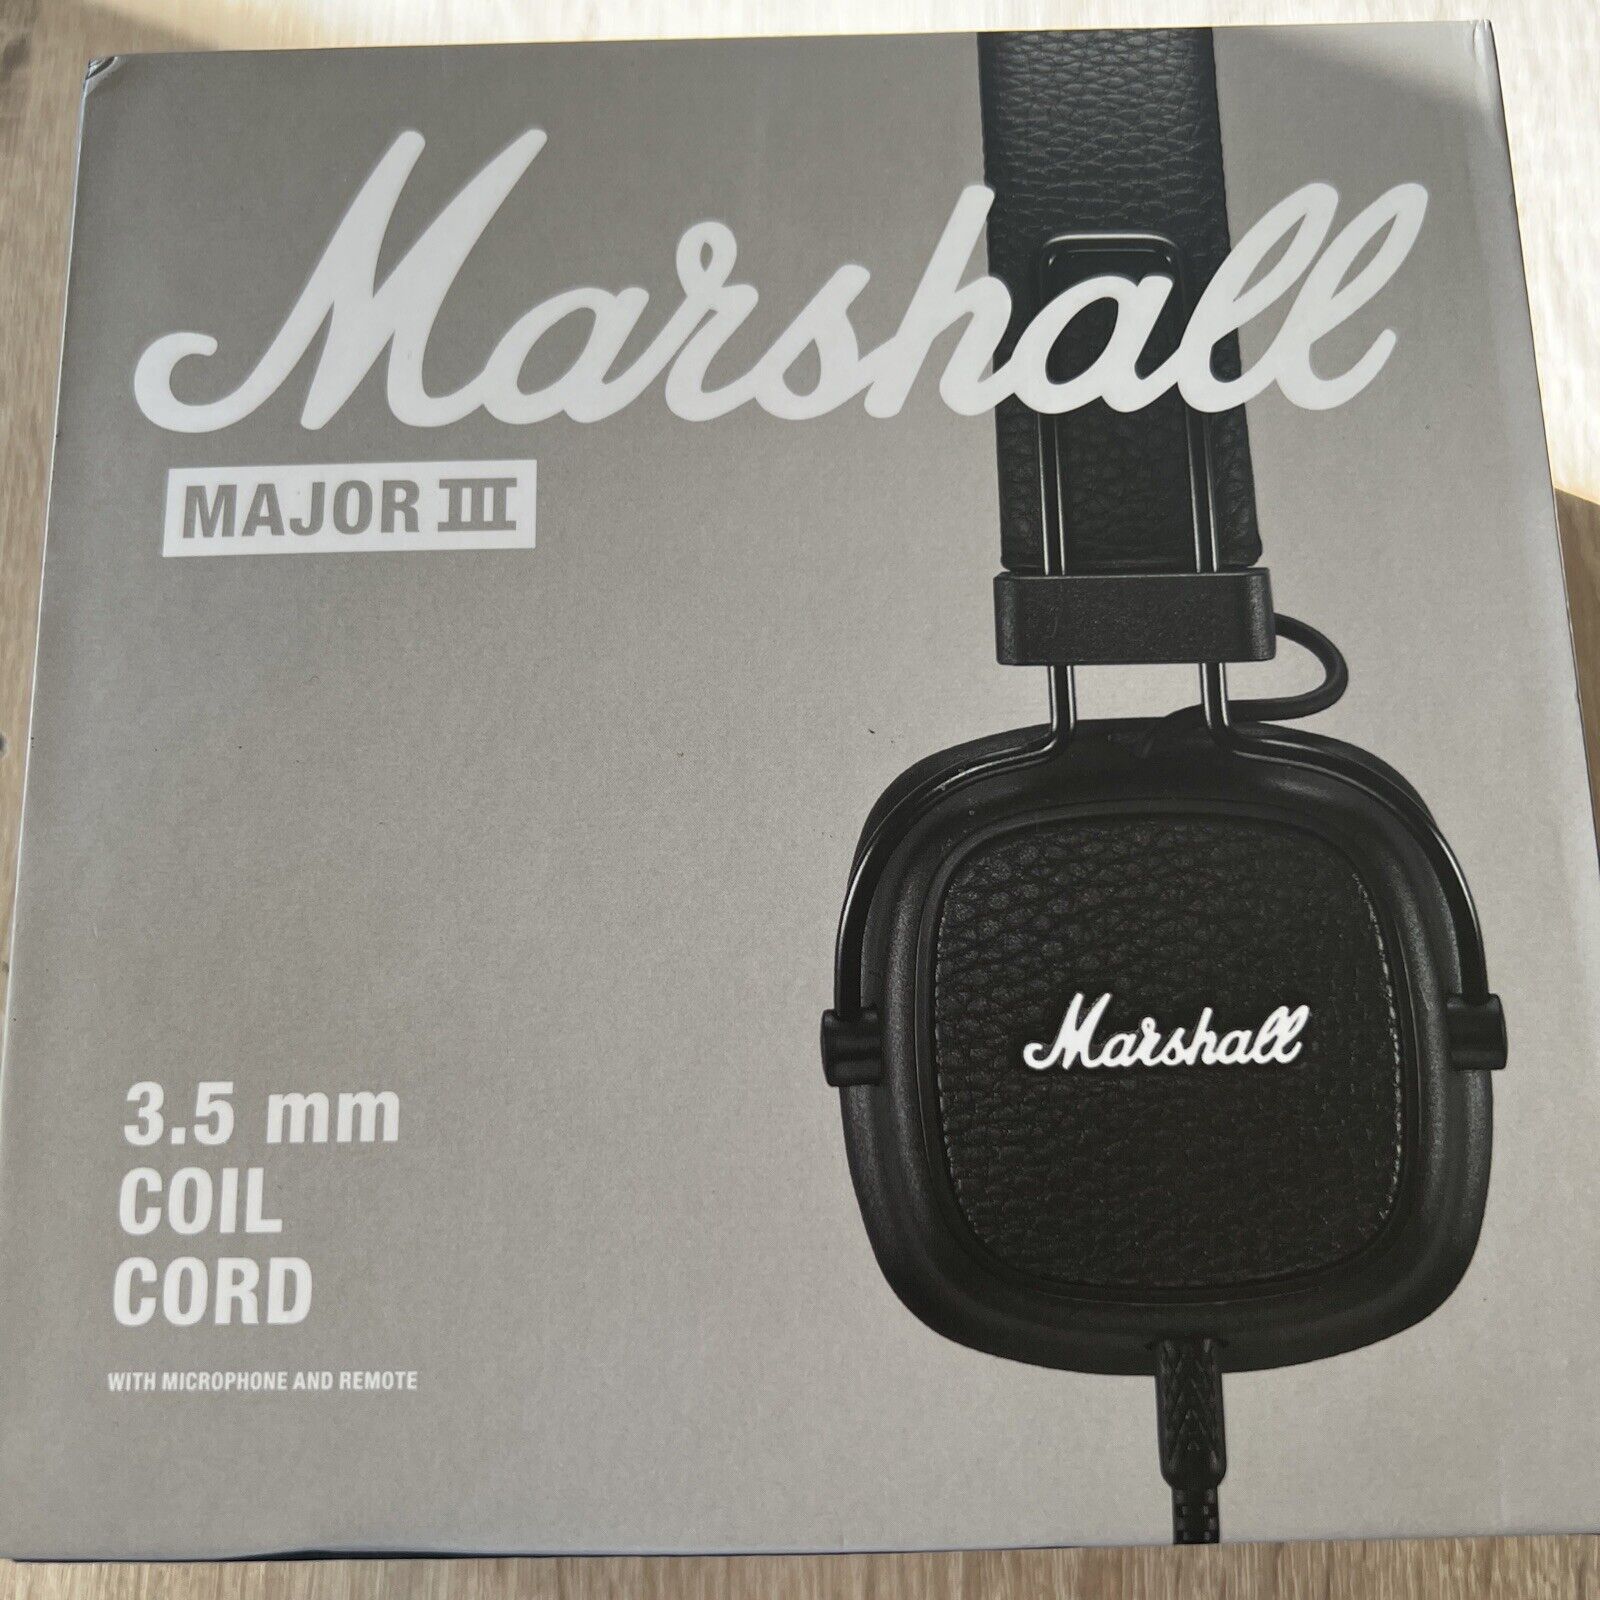 Marshall Major III On-Ear Headphones - Black